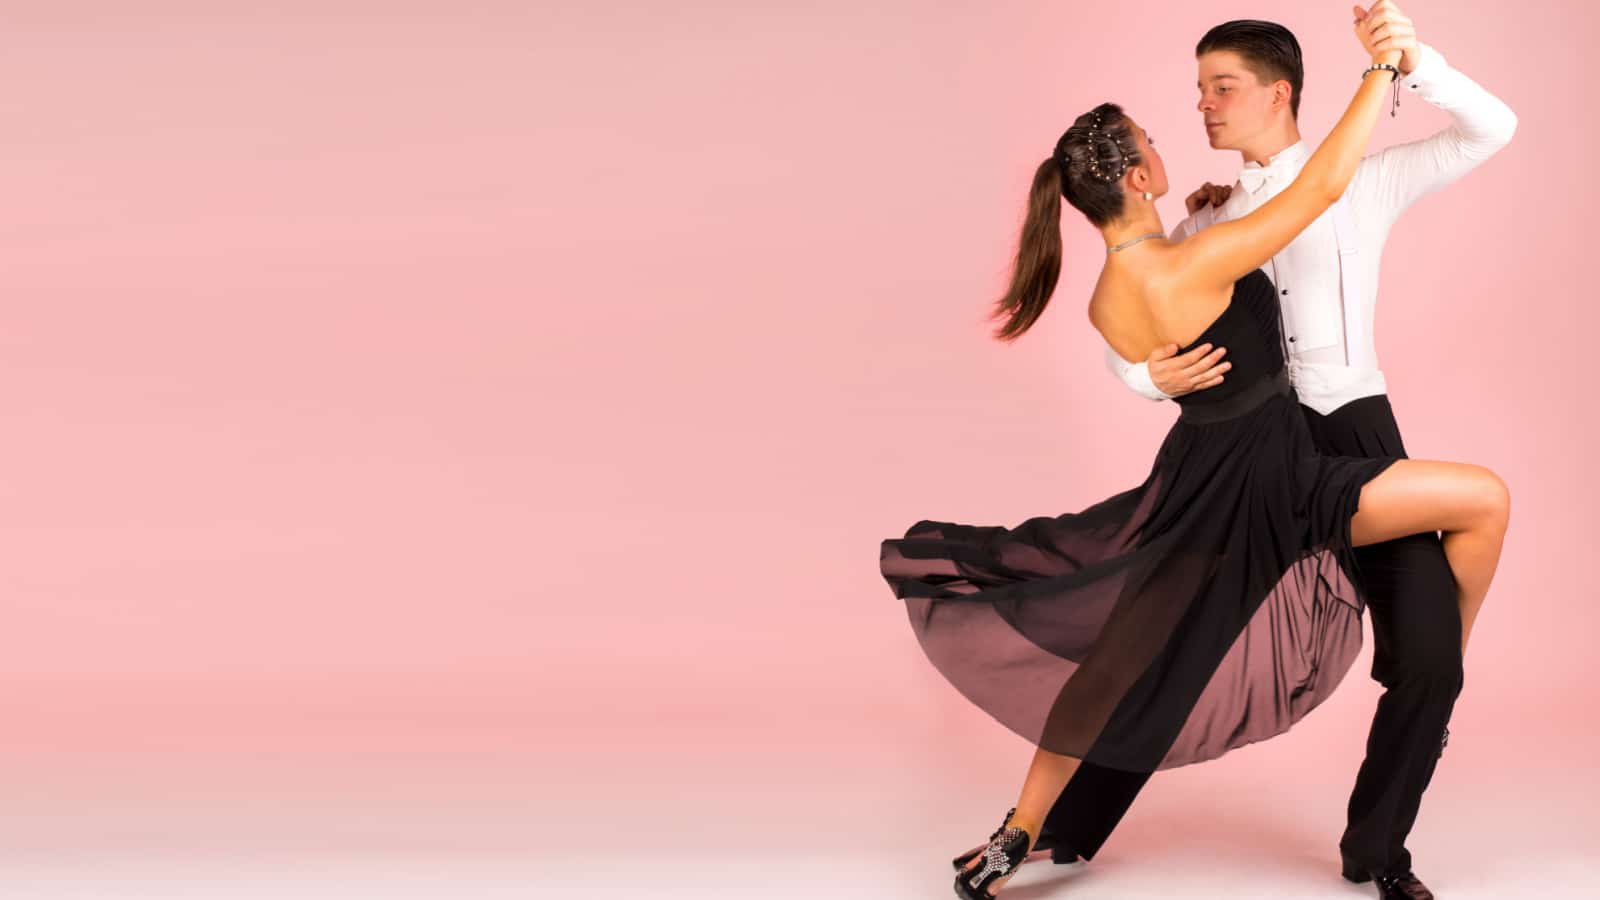 Tango dancing school couple background